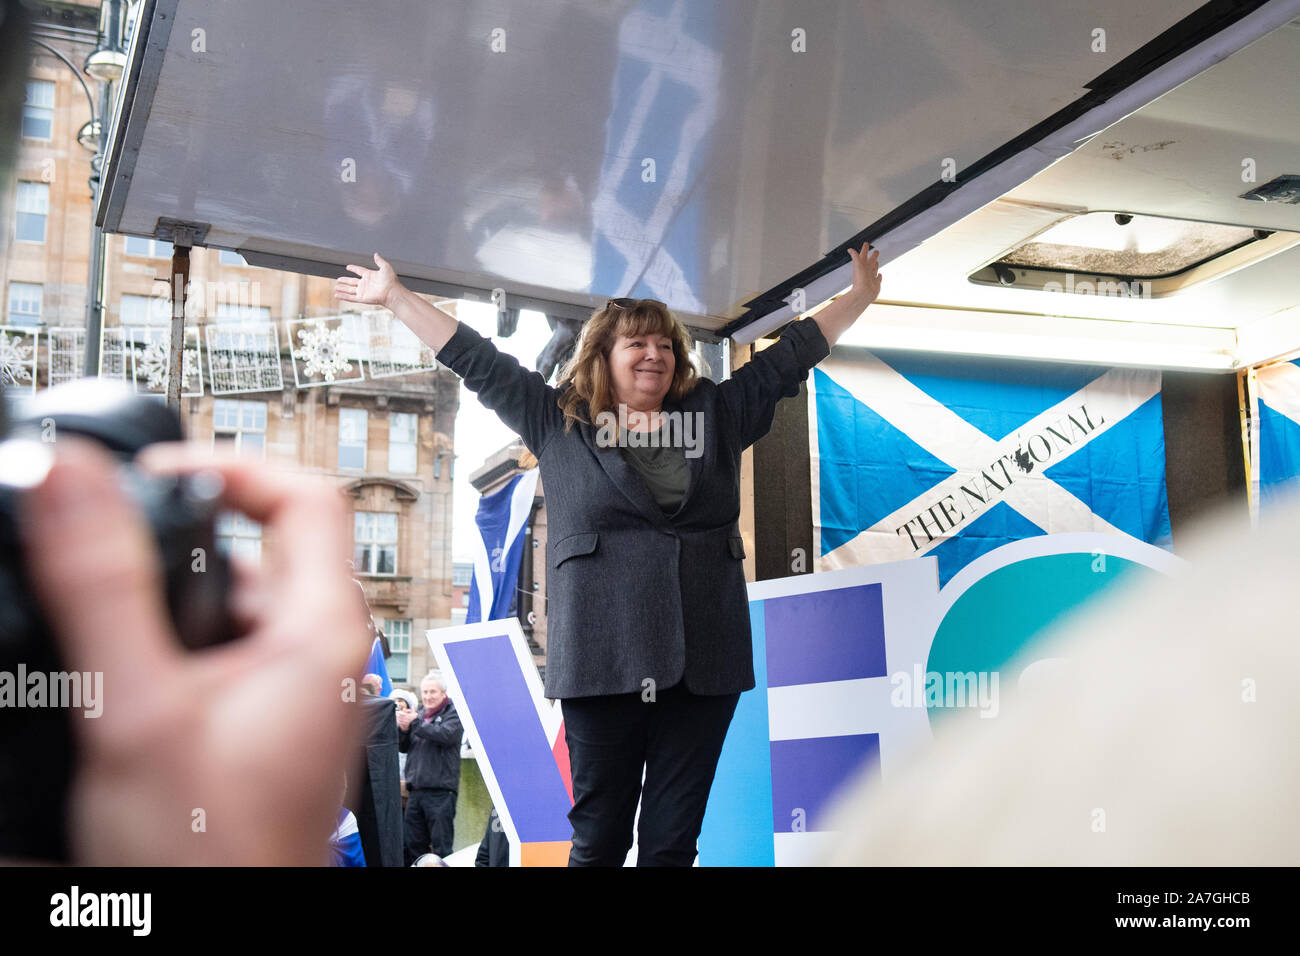 Janey Godley, comico, drammaturgo e autore parlando all'Indipendenza rally indyref2020, George Square, Glasgow, Scozia - 2 Novembre 2019 Foto Stock